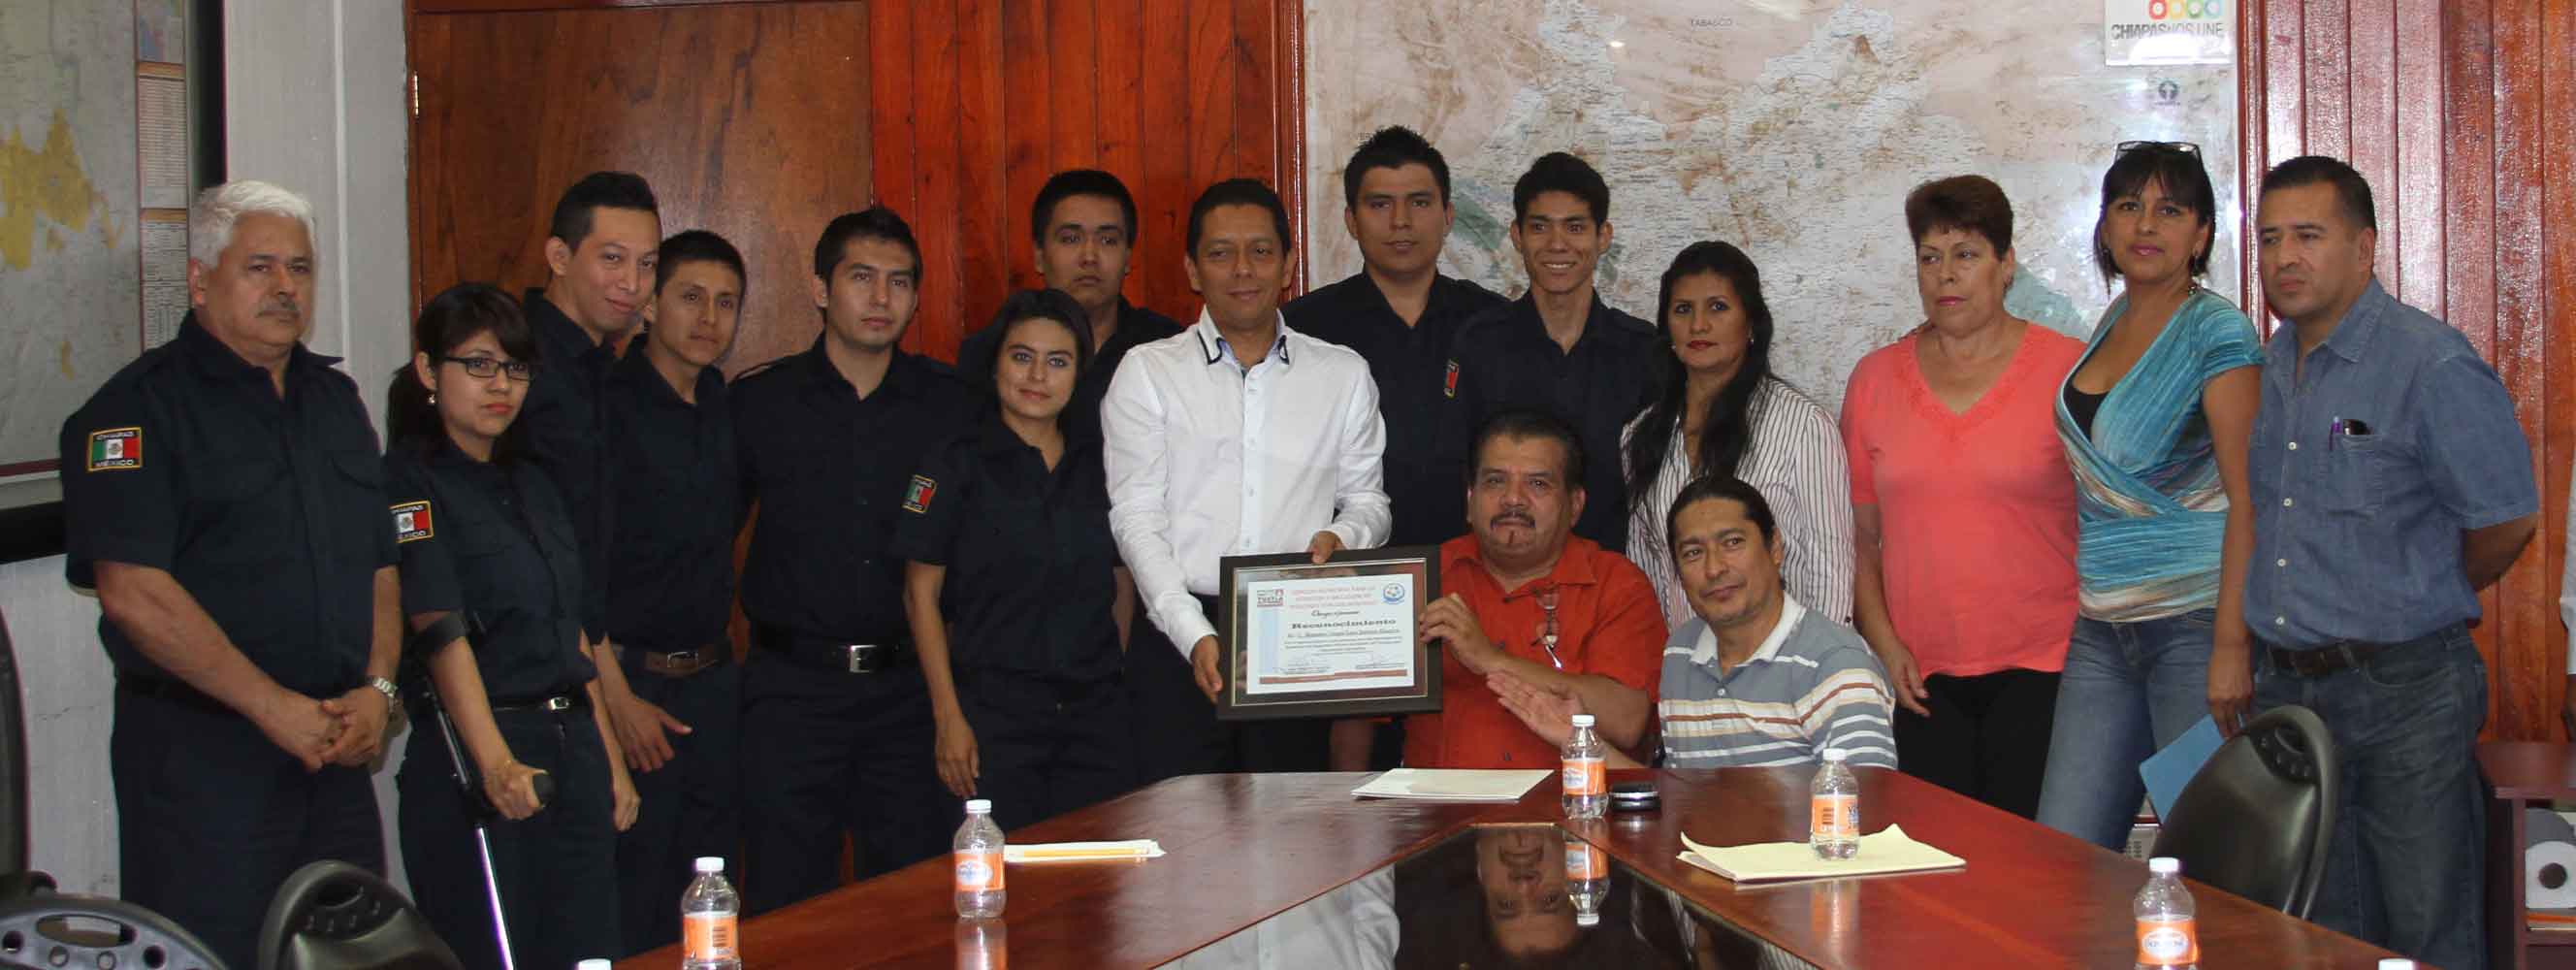 Reconocen al Gobierno de Chiapas por inclusión, igualdad y respeto de personas con discapacidad